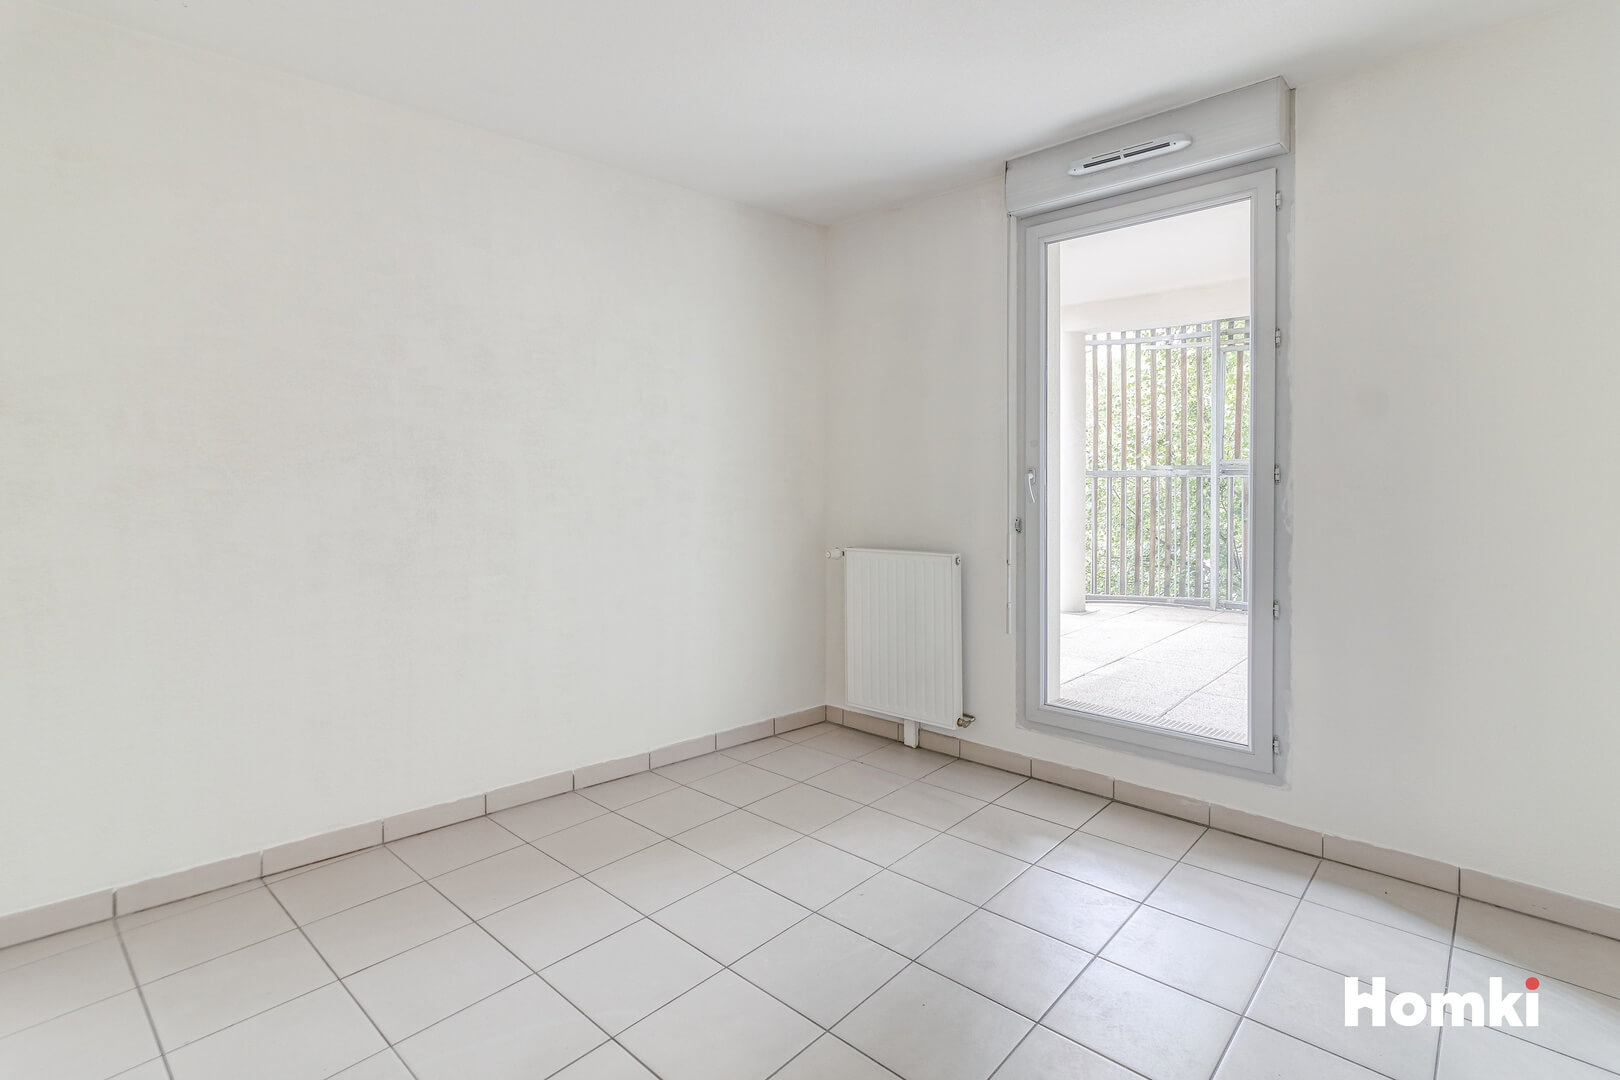 Homki - Vente Appartement  de 64.0 m² à Toulouse 31300